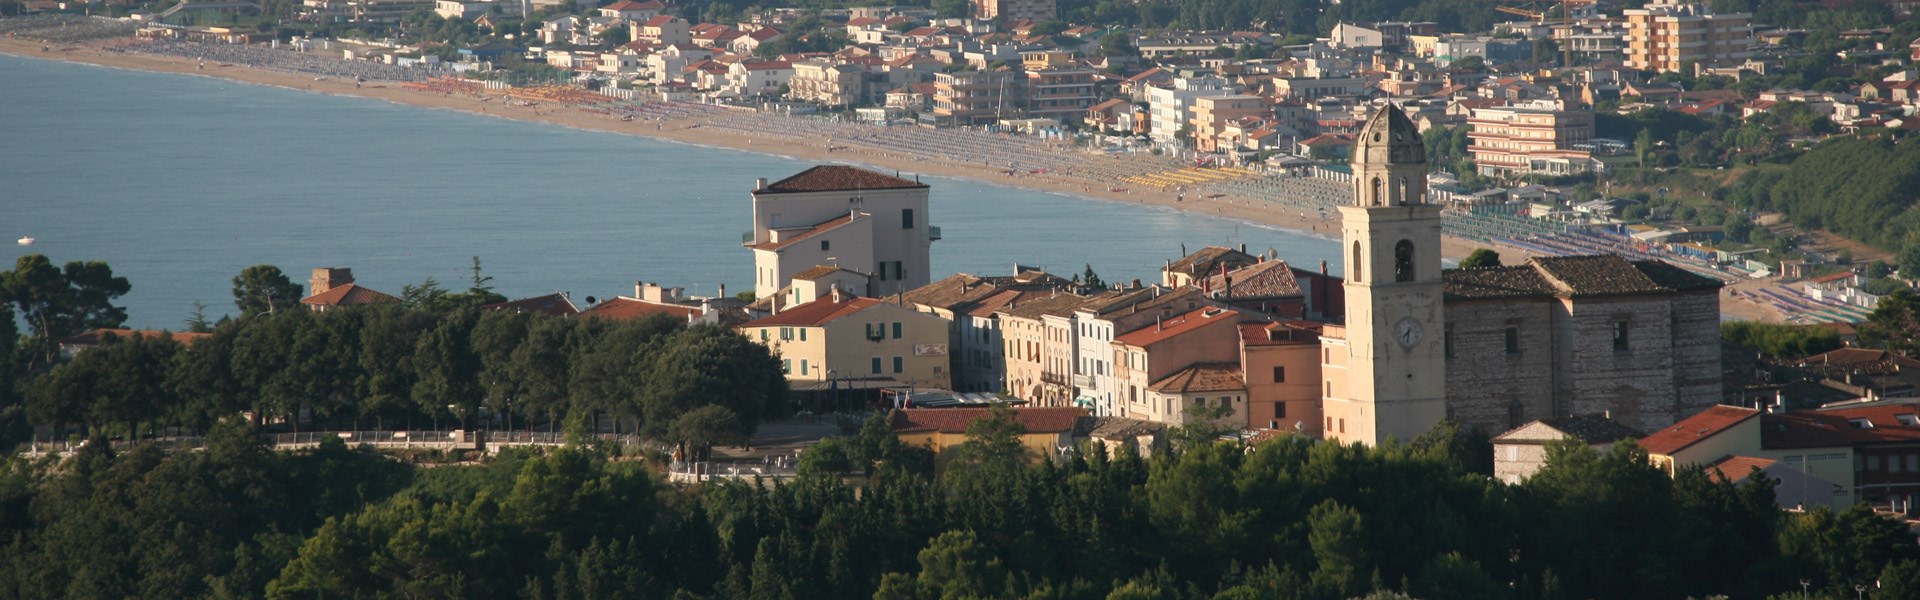 Sirolo - Paesaggio